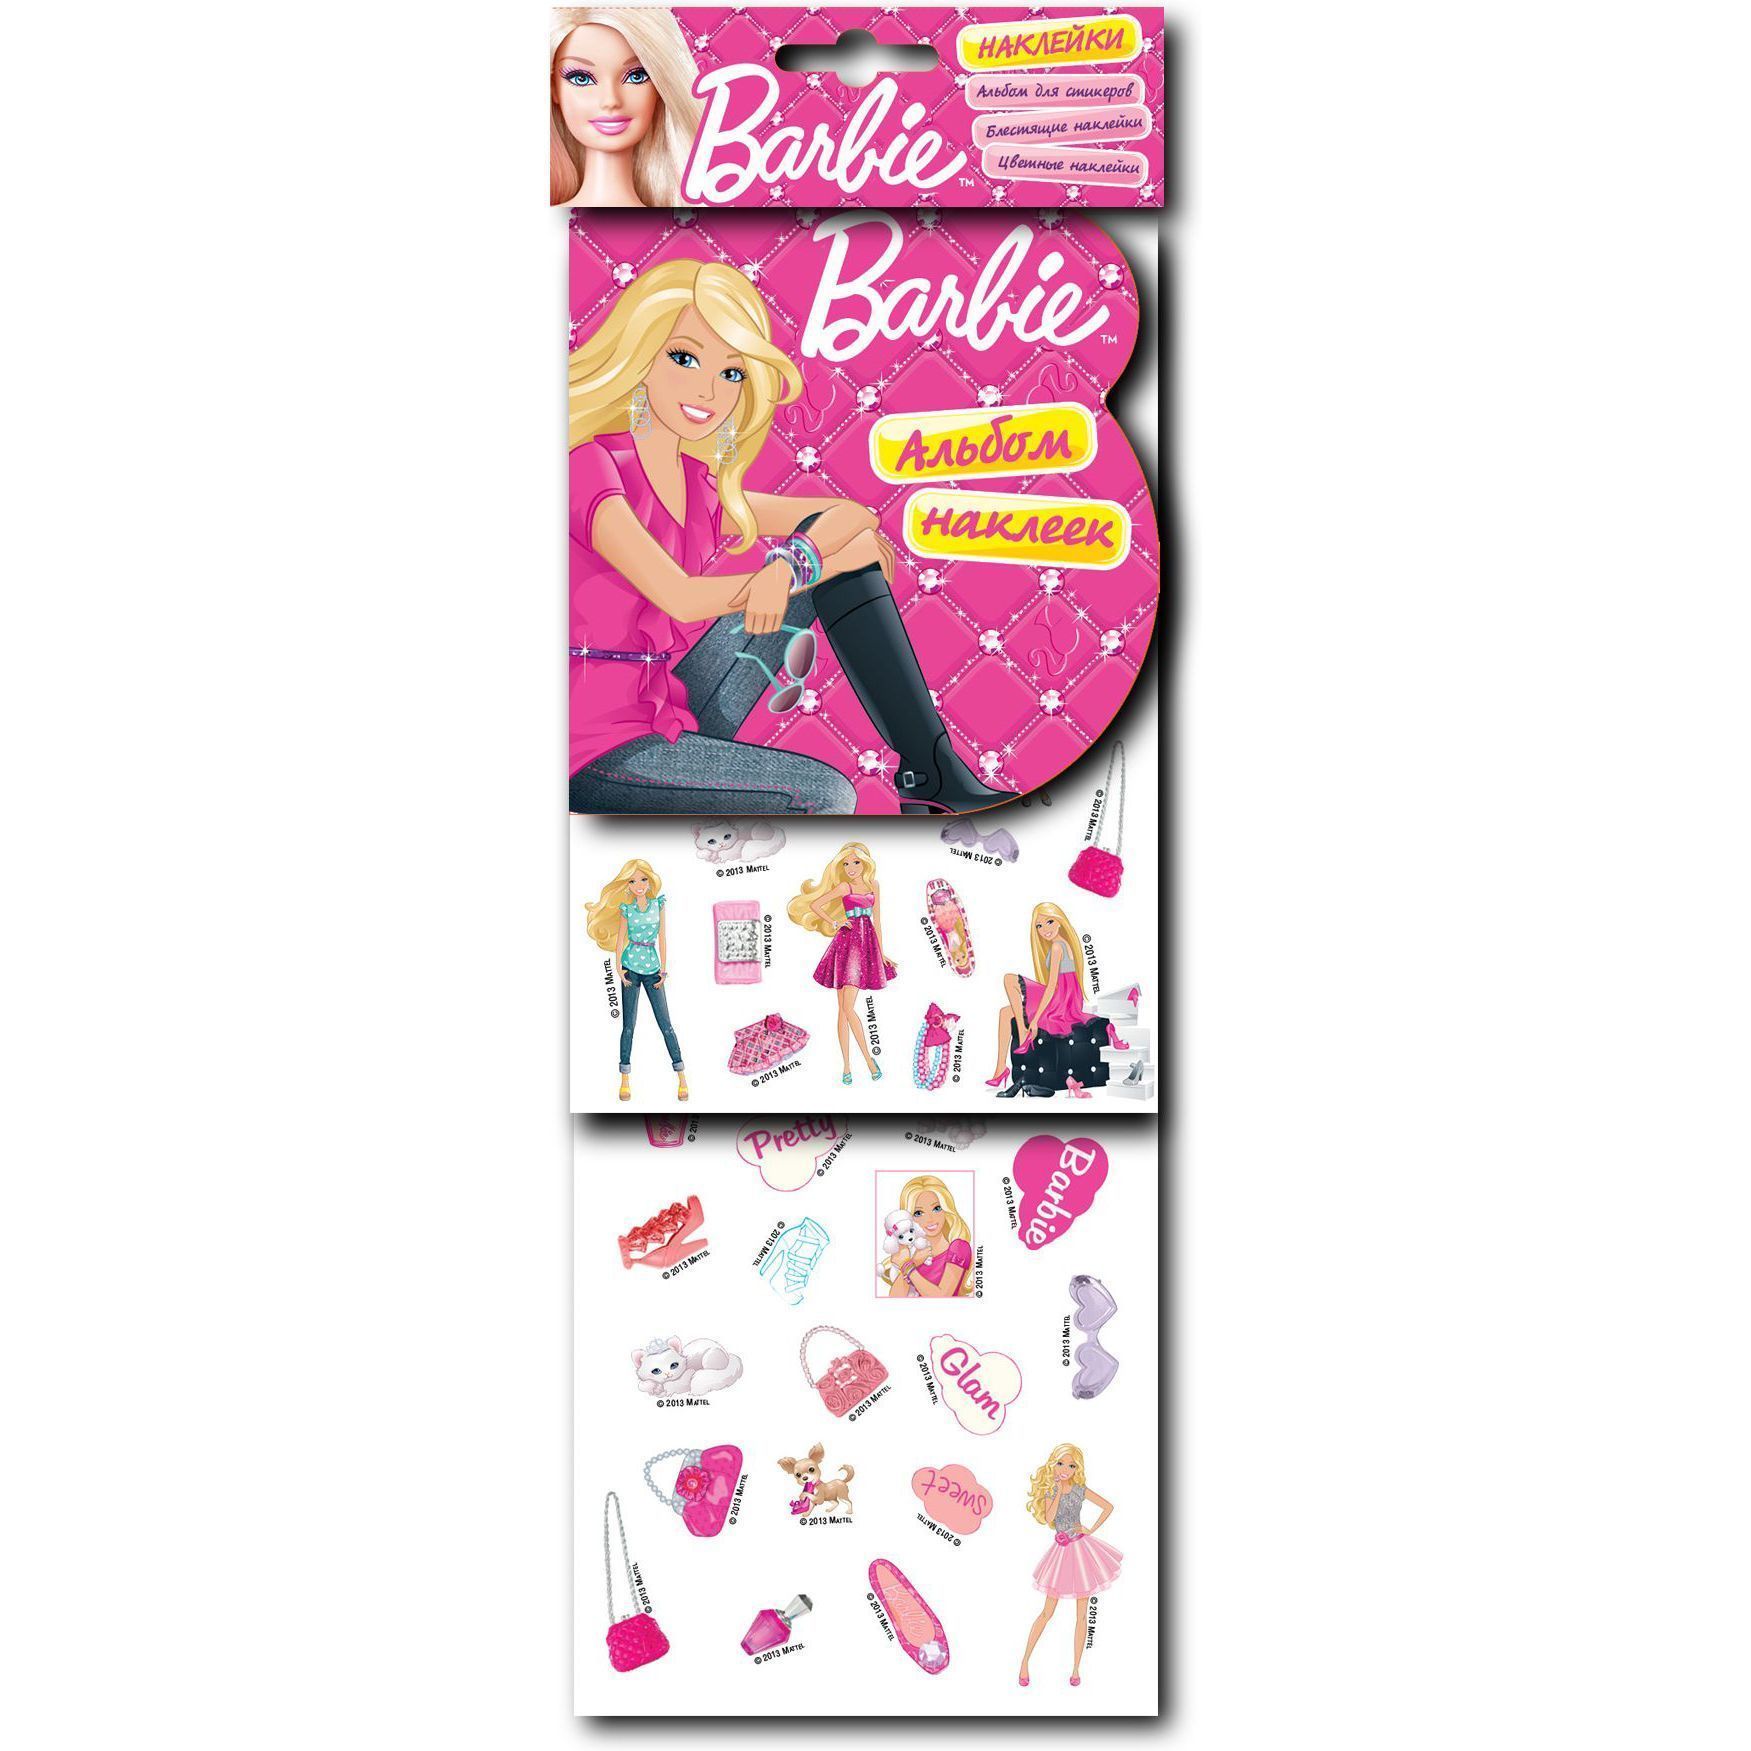 Barbie. Альбом наклеек, блестящие наклейки, цветные наклейки (арт. 20820)